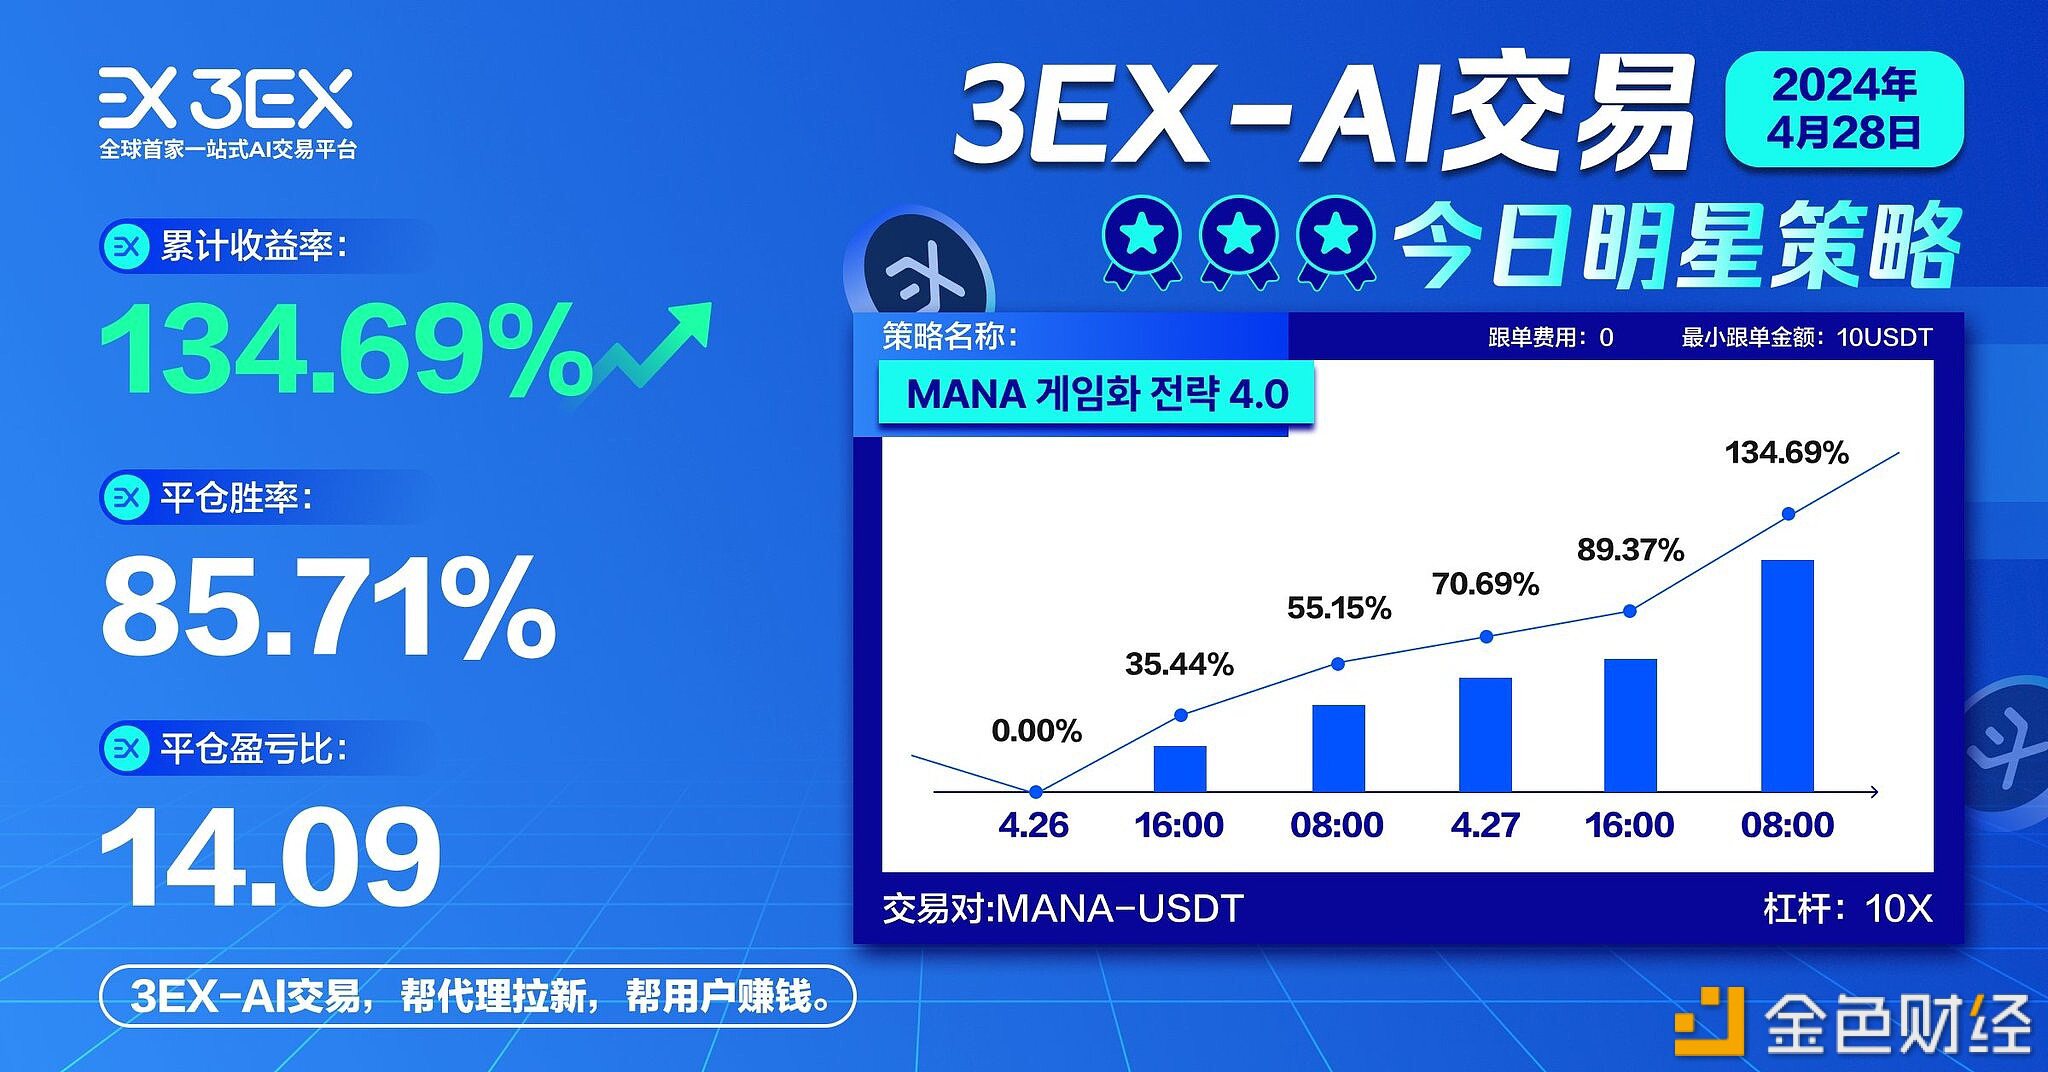 3EXAI交易平台MANA-USDT币对明星策略平仓胜率达85.71%